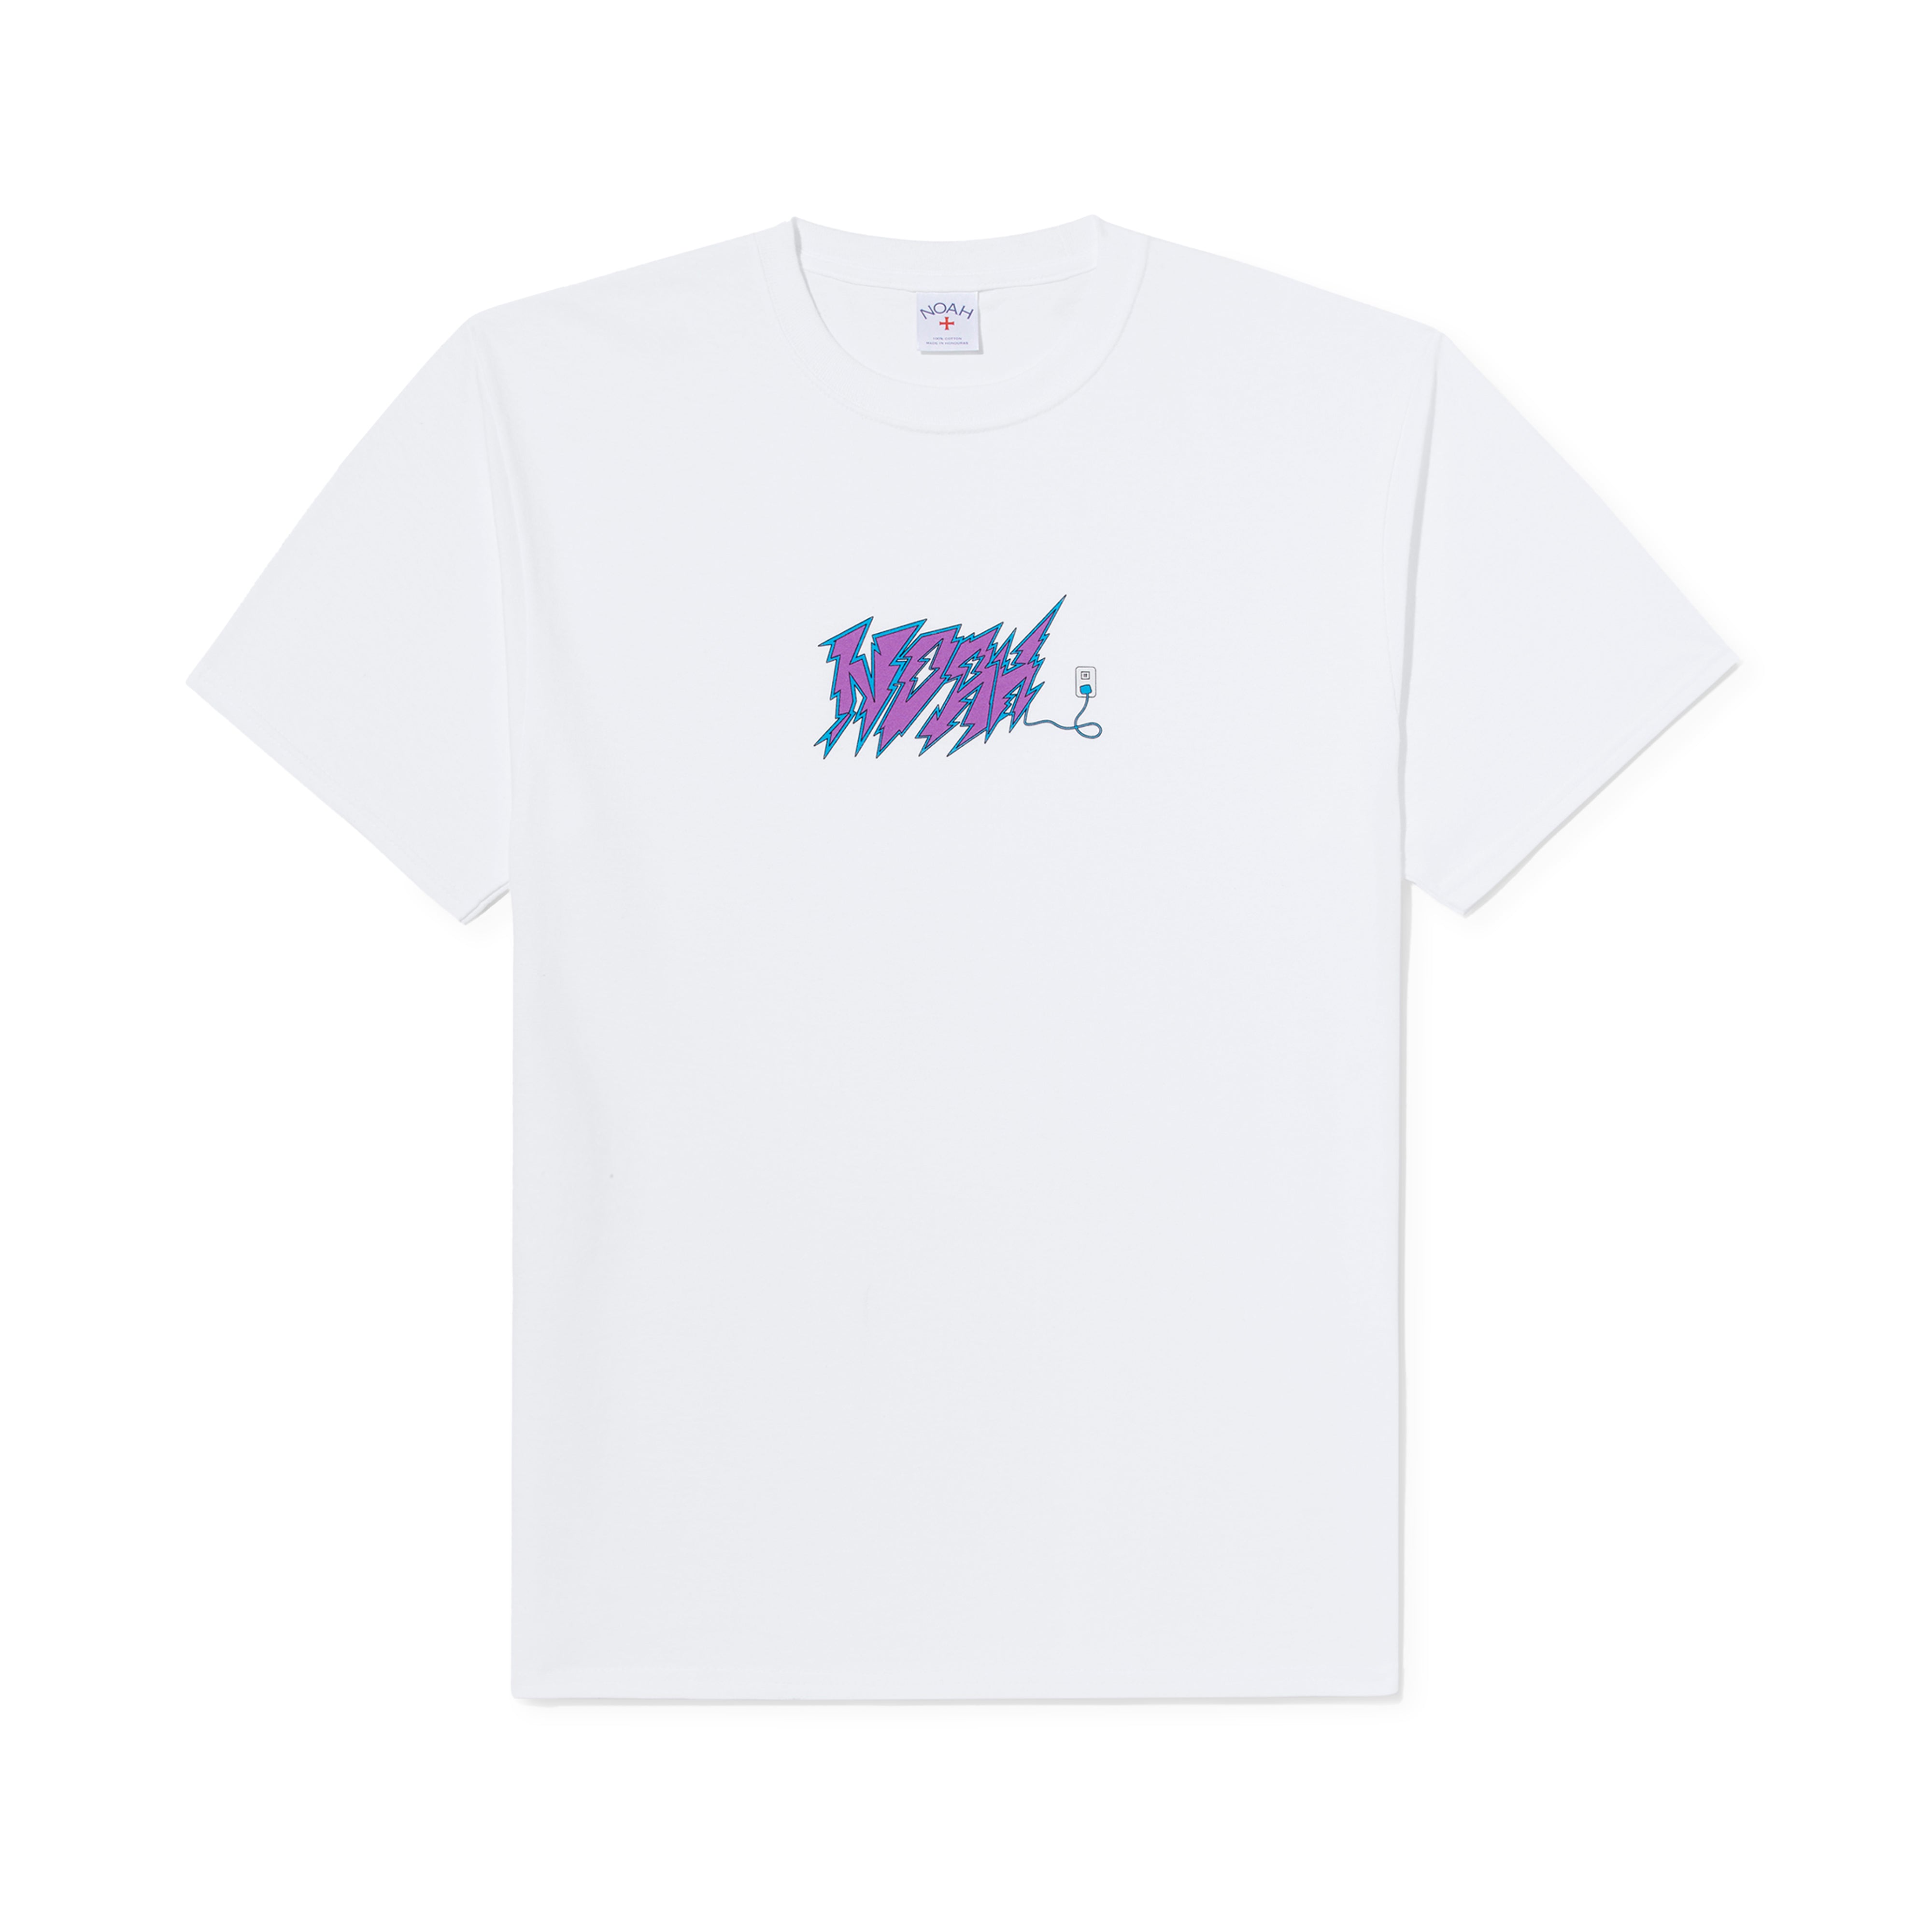 ベビーグッズも大集合 Supreme × DSMNY 10th Anniversary T-Shirt ...